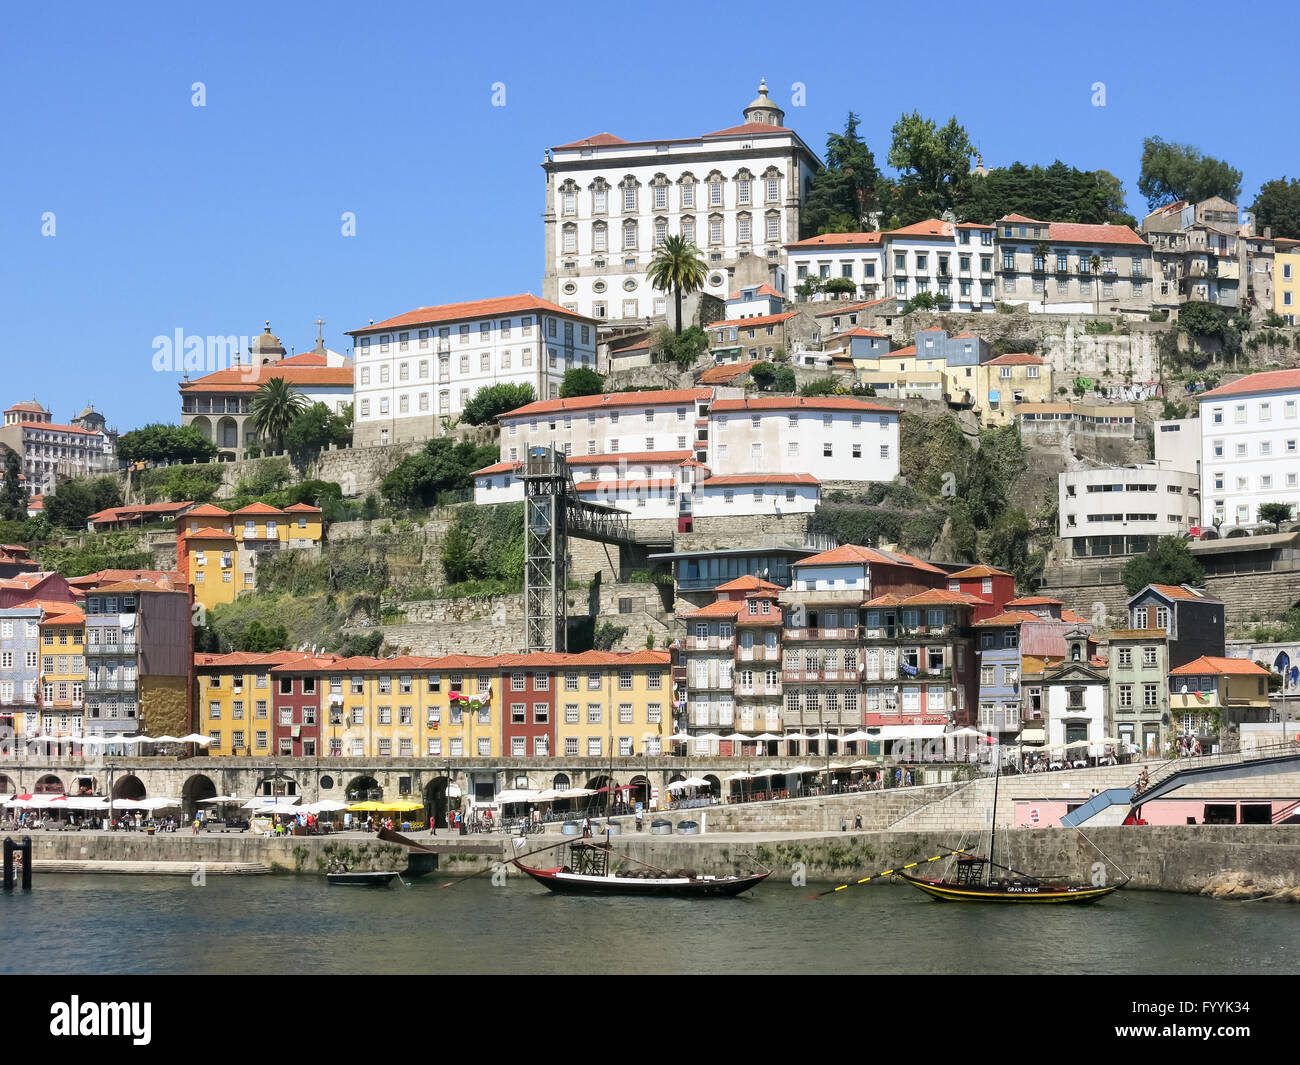 Ribeira District and quay alongside Douro River, Porto, Portugal Stock Photo